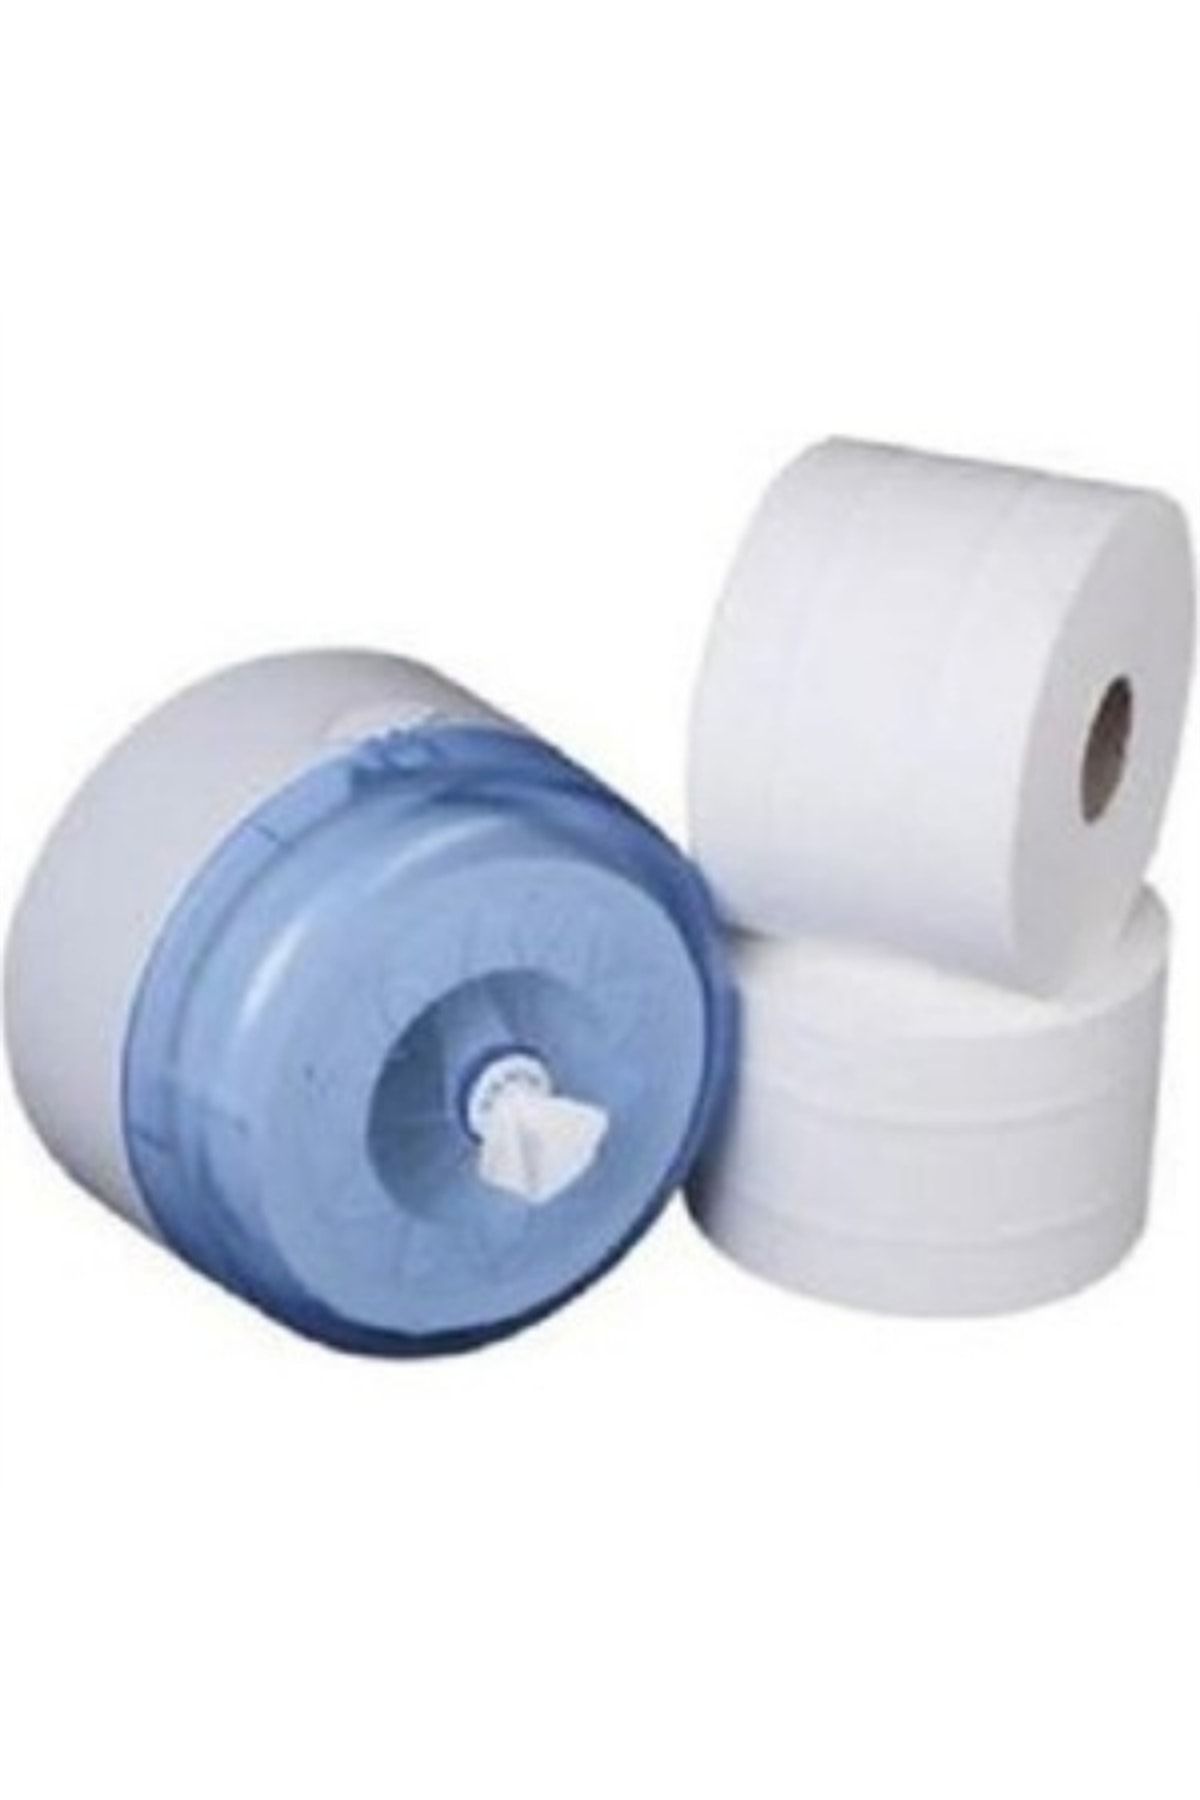 Pelin Içten Çekmeli Tuvalet Kağıdı Ve Kağıt Verici